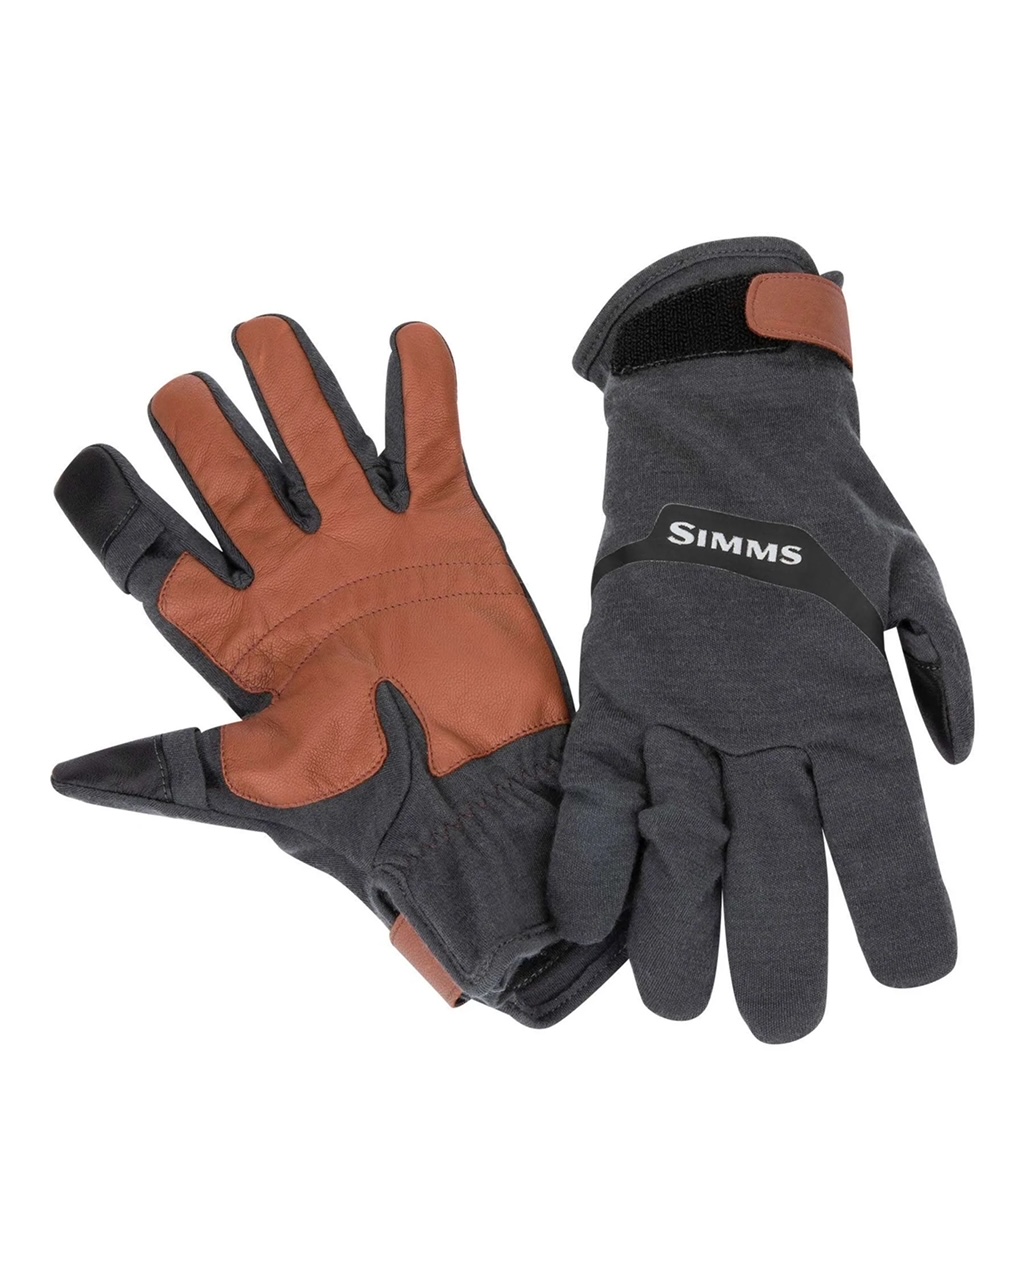 Simms Lightweight Wool Flex Glove - Large